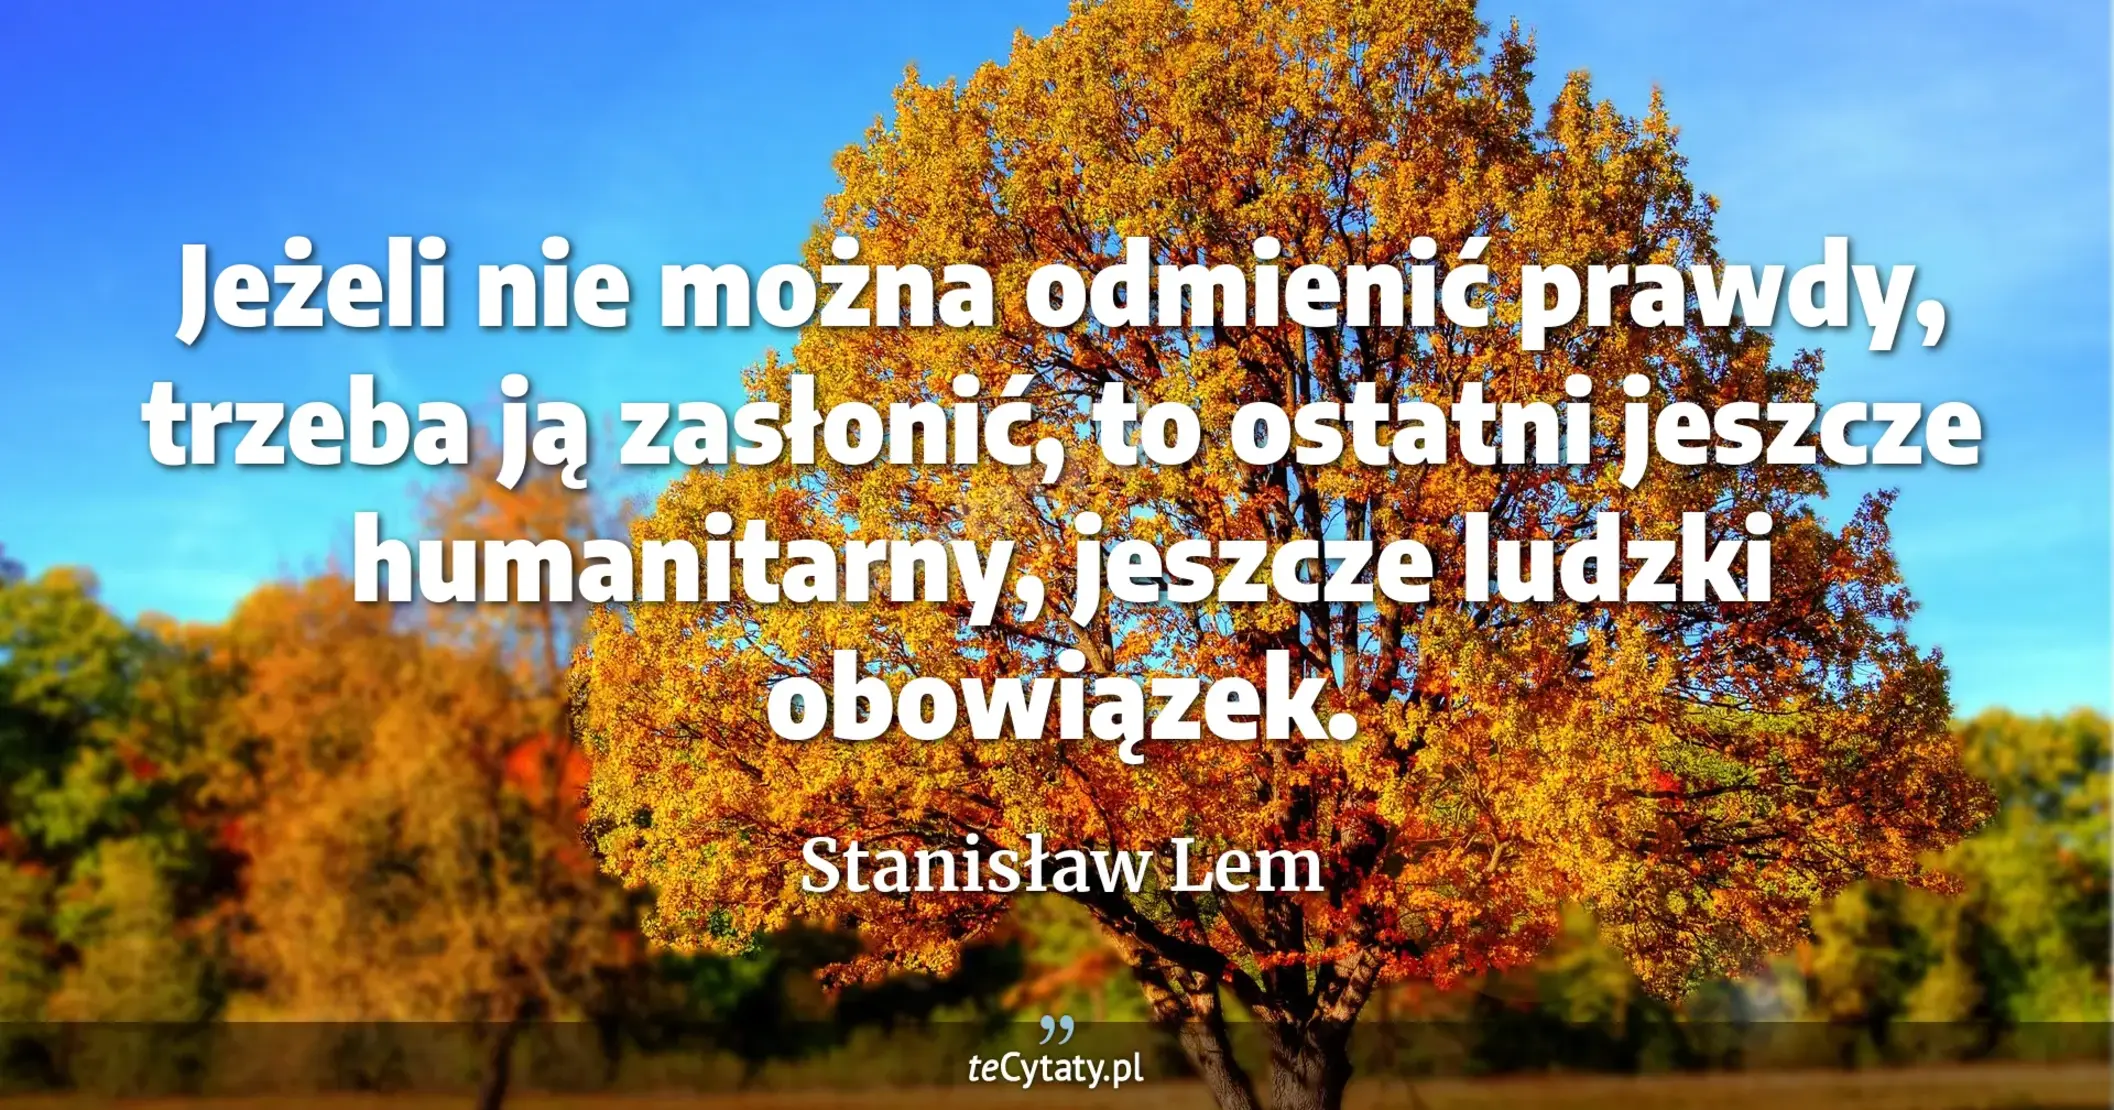 Jeżeli nie można odmienić prawdy, trzeba ją zasłonić, to ostatni jeszcze humanitarny, jeszcze ludzki obowiązek. - Stanisław Lem